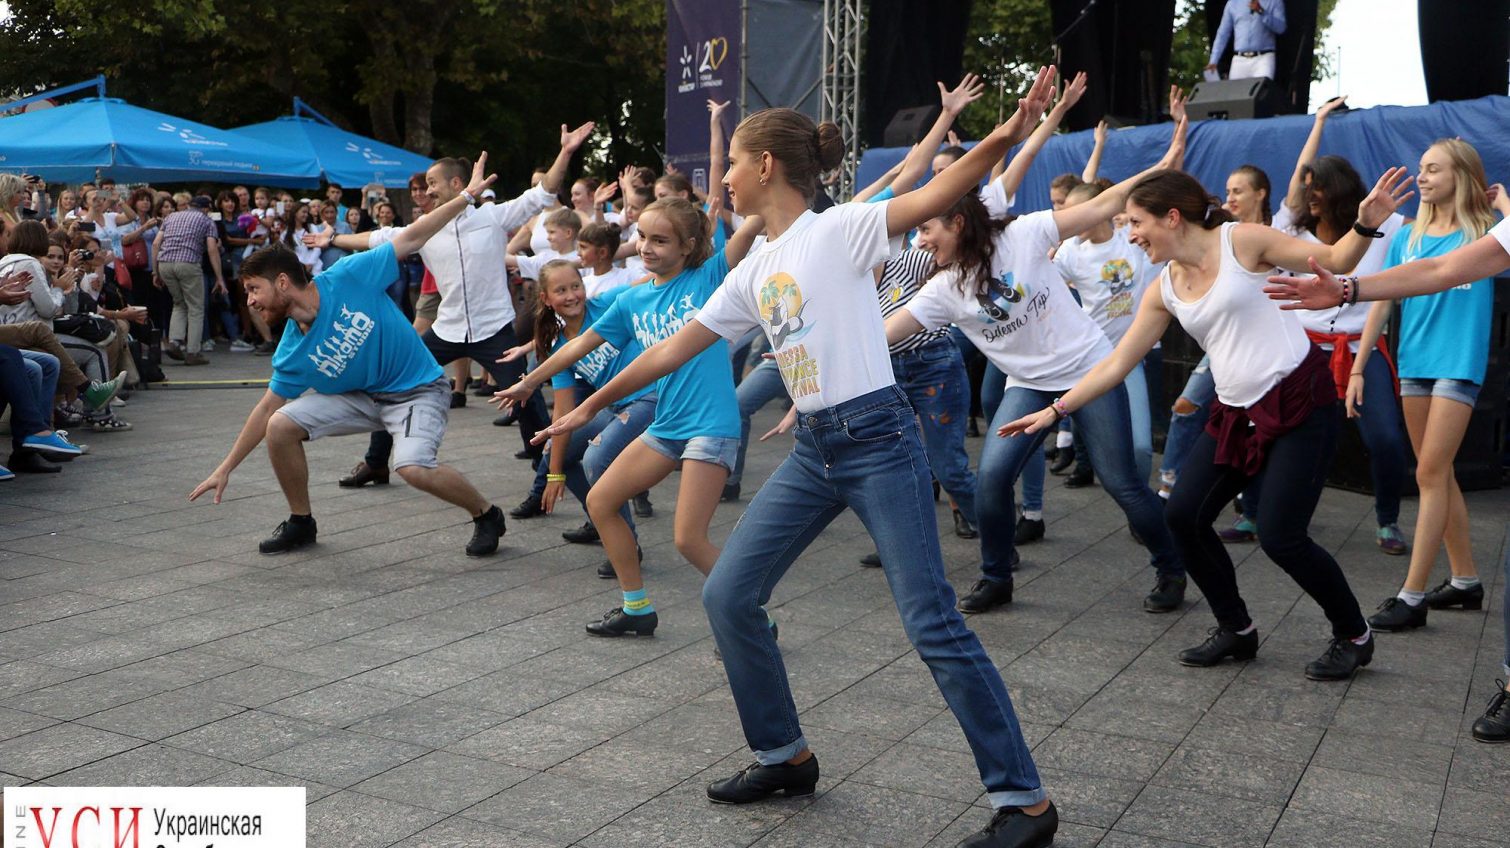 Отчеканили у Дюка: в Одессе открылся фестиваль чечетки (фото) «фото»